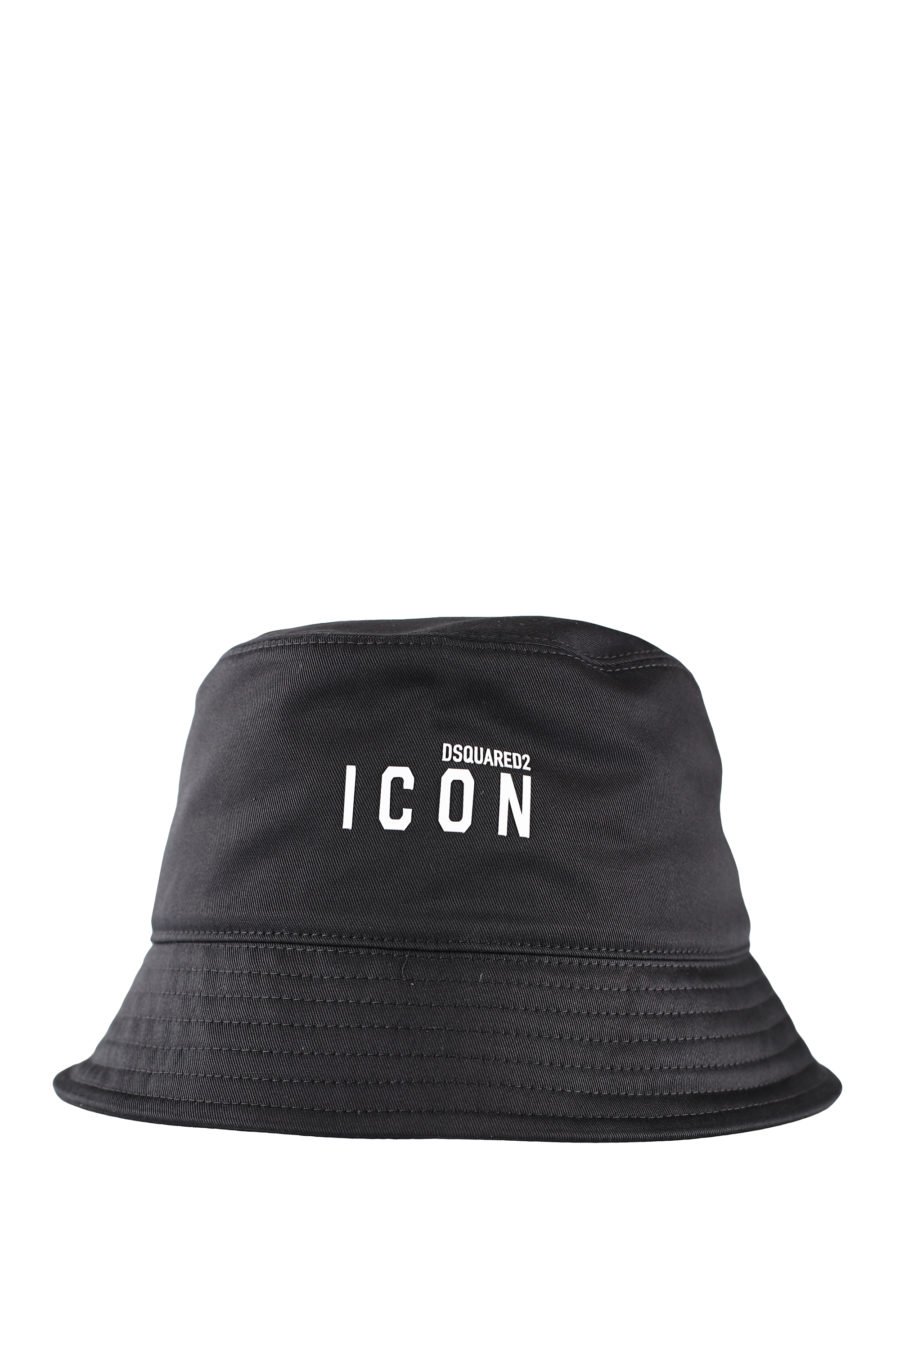 Sombrero de pescador negro con logo "icon" - IMG 0067